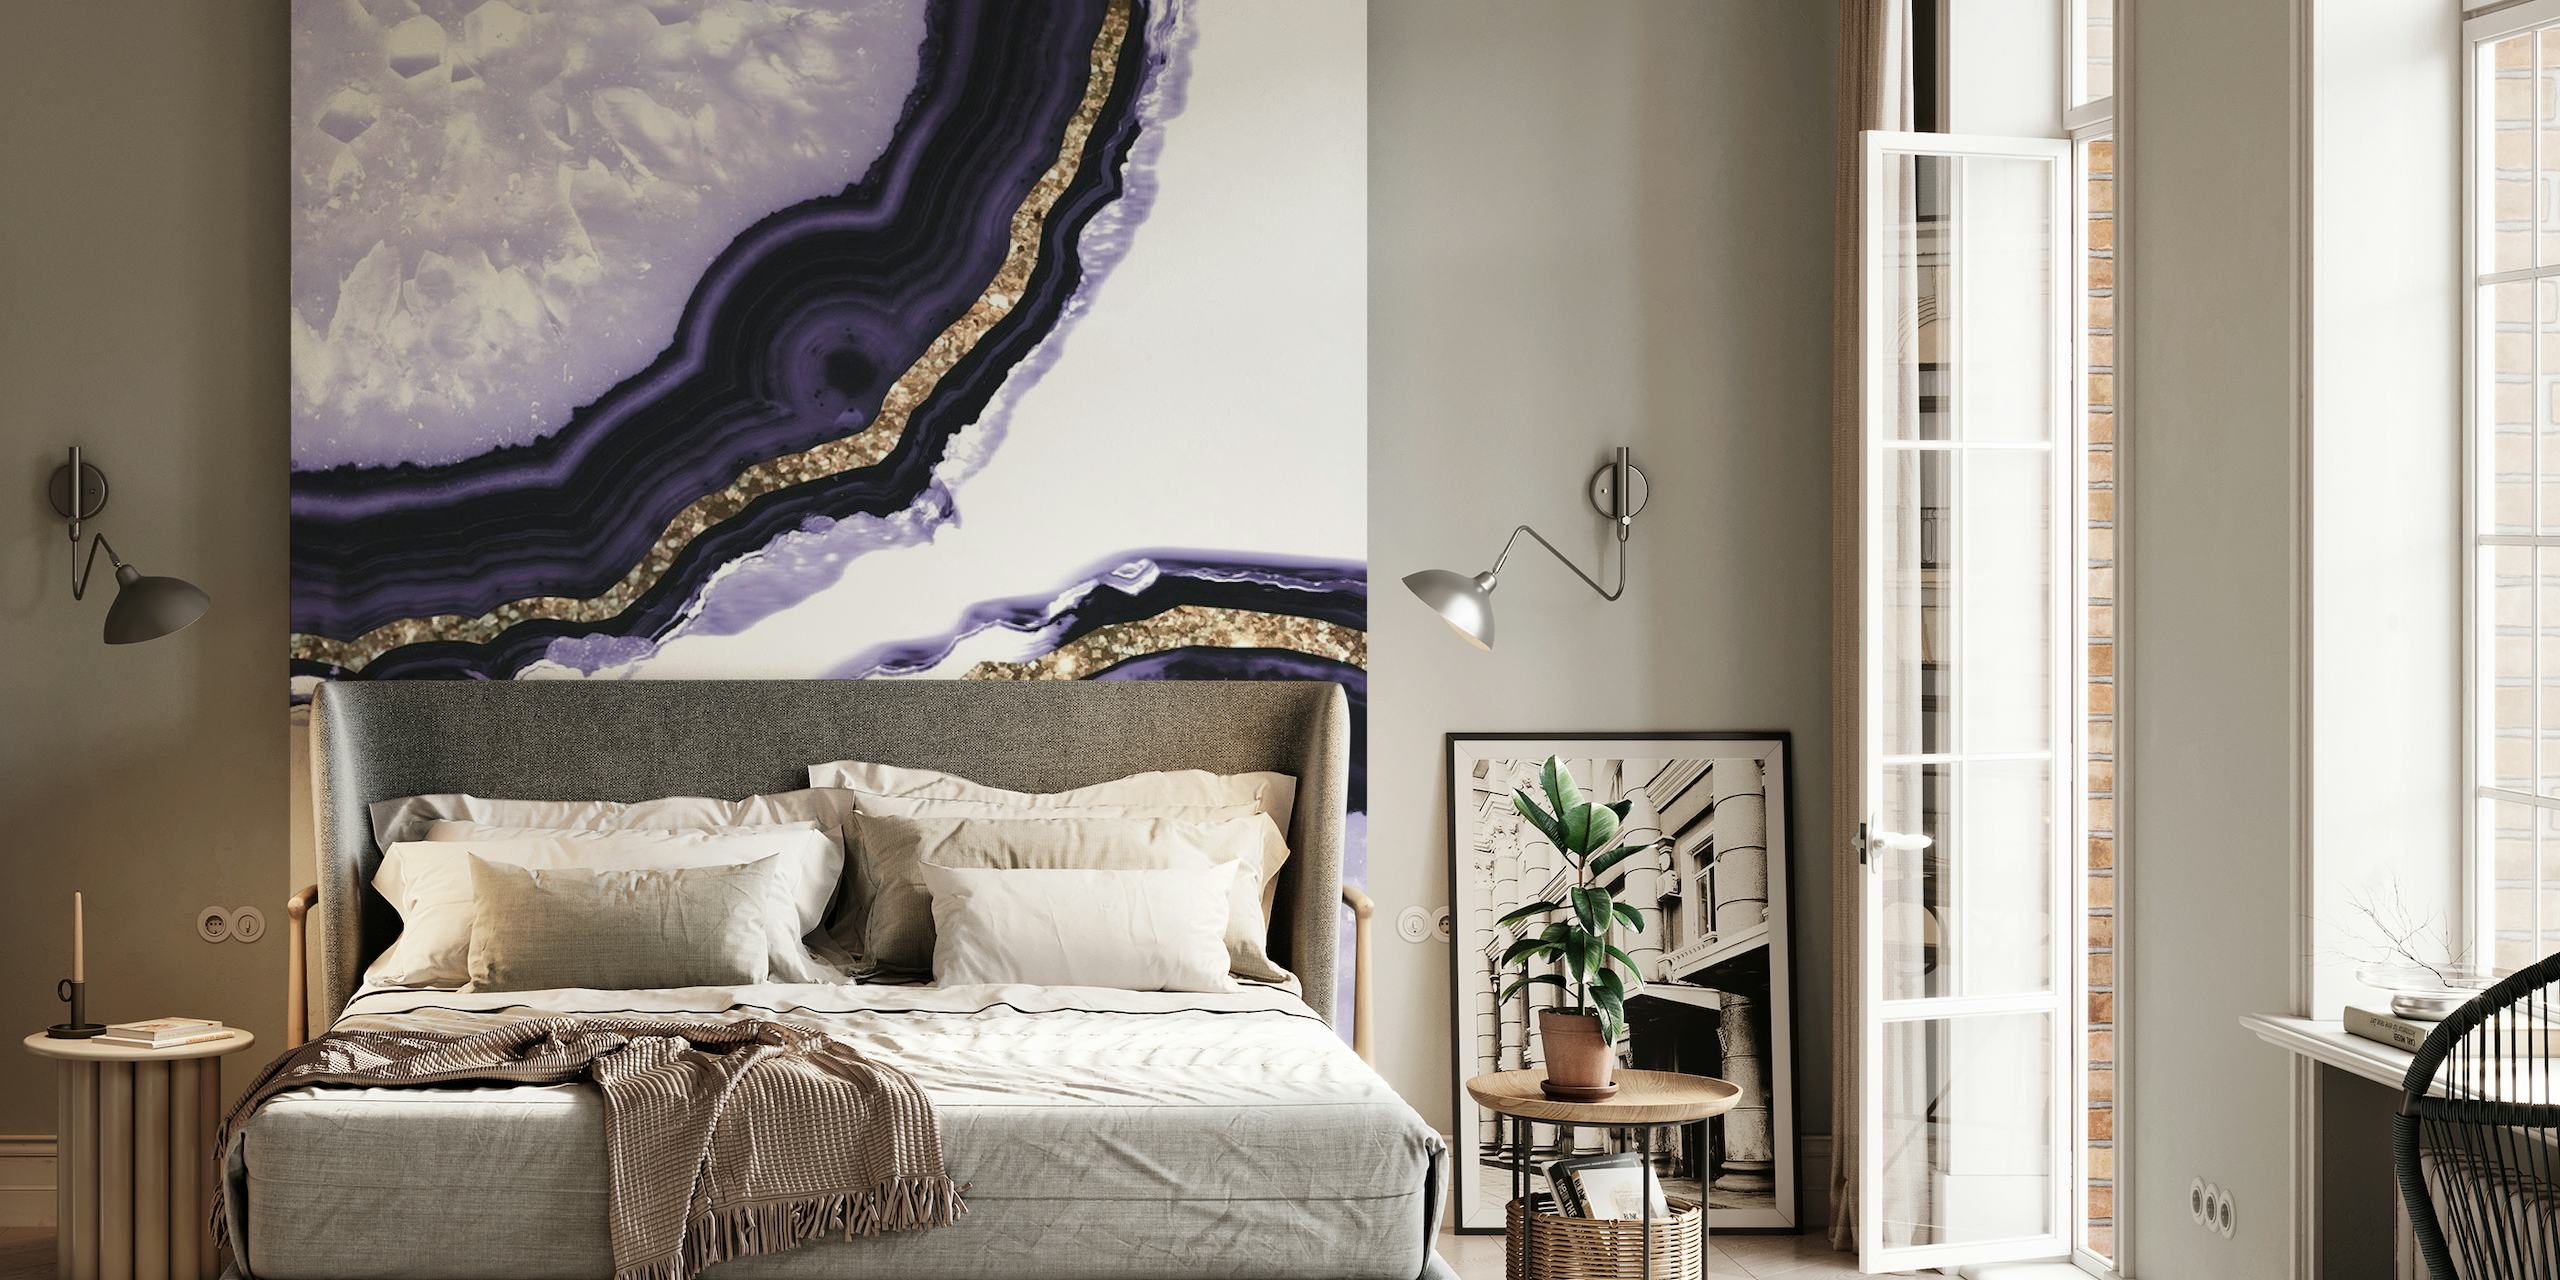 Papier peint mural à motif de tranches d'agate noir et or pour une décoration intérieure luxueuse